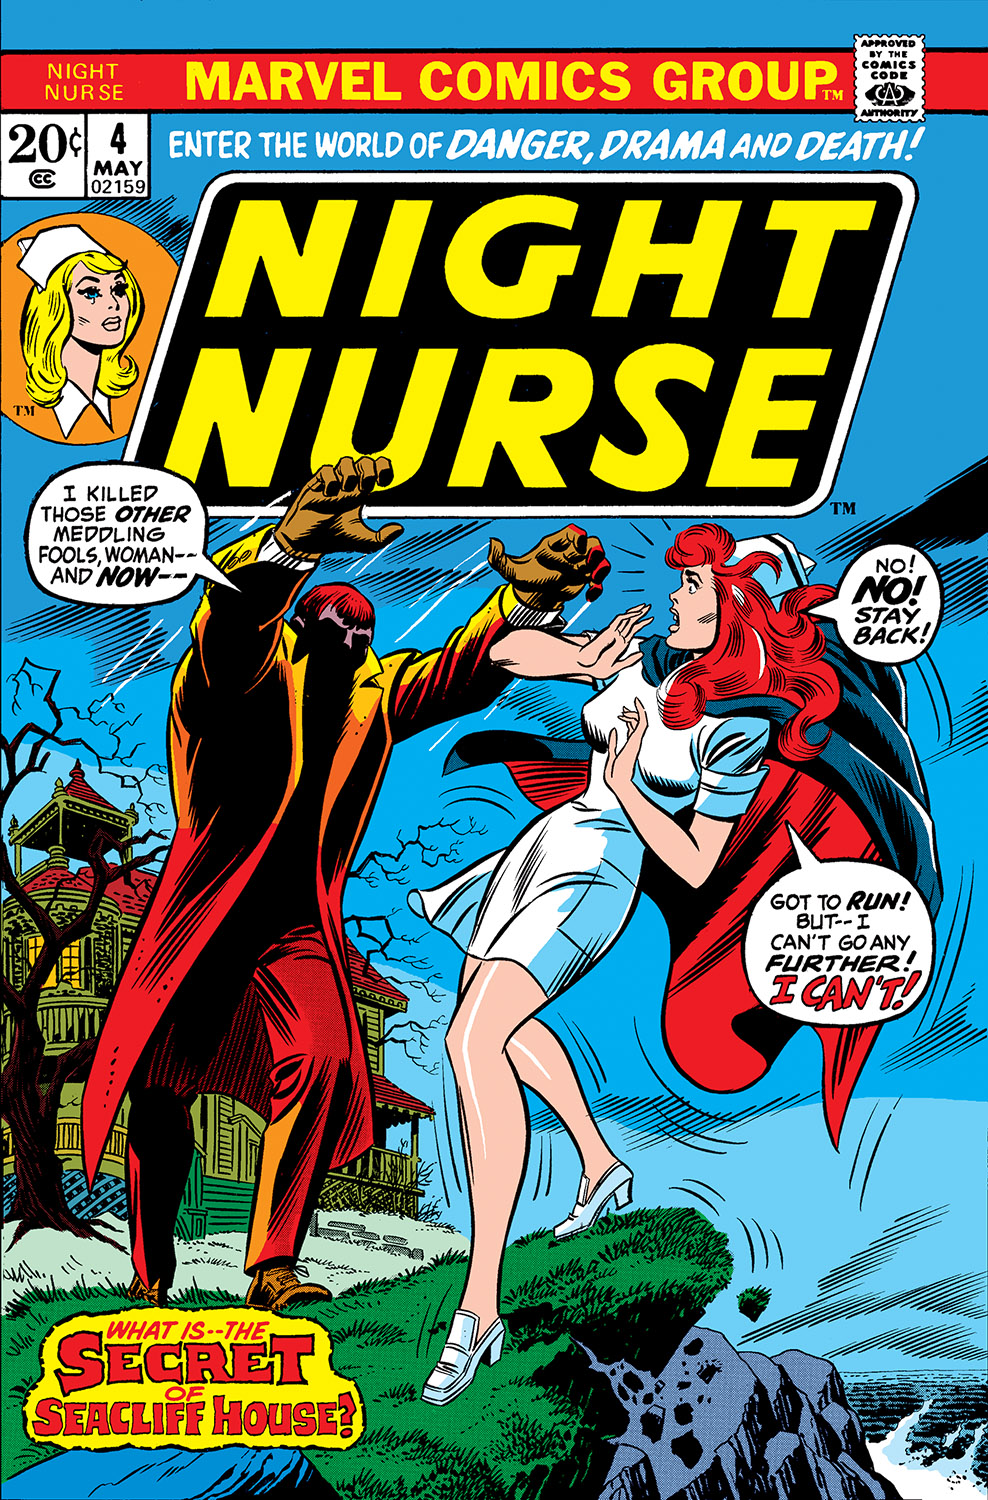 Night Nurse (1972) #4